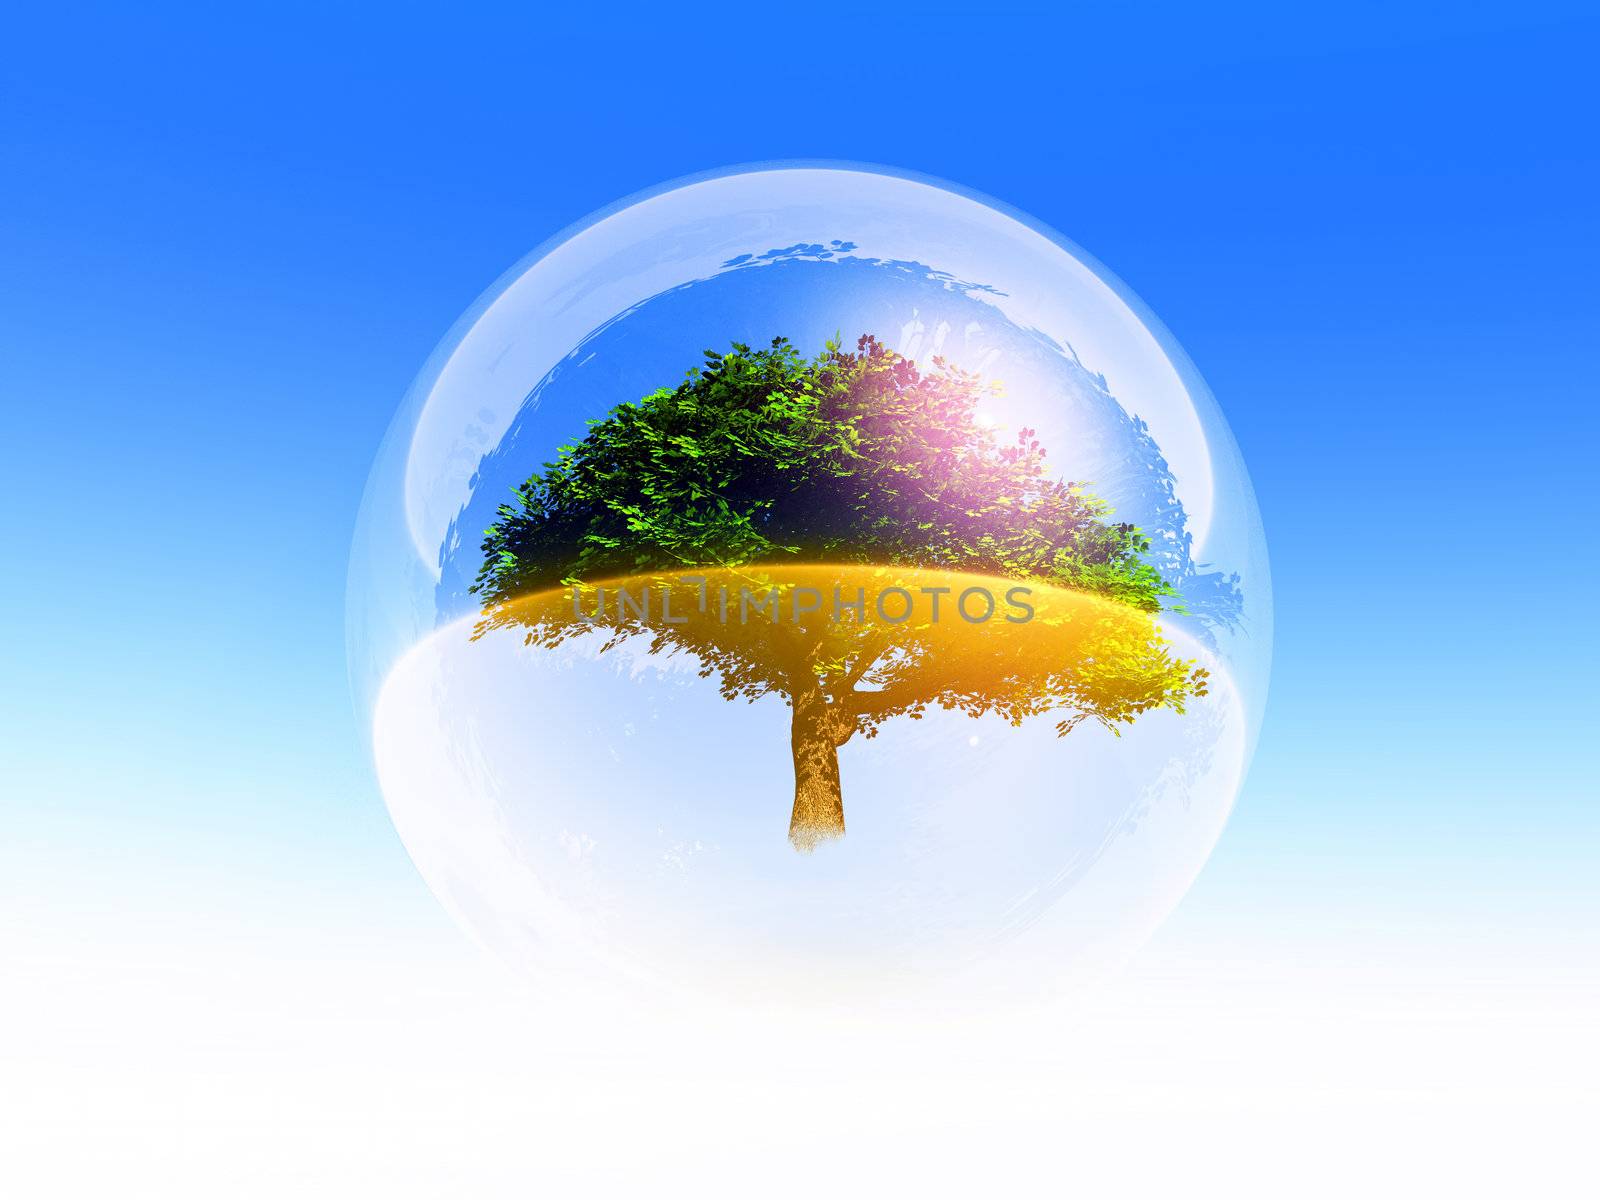 Bubble tree by gufoto